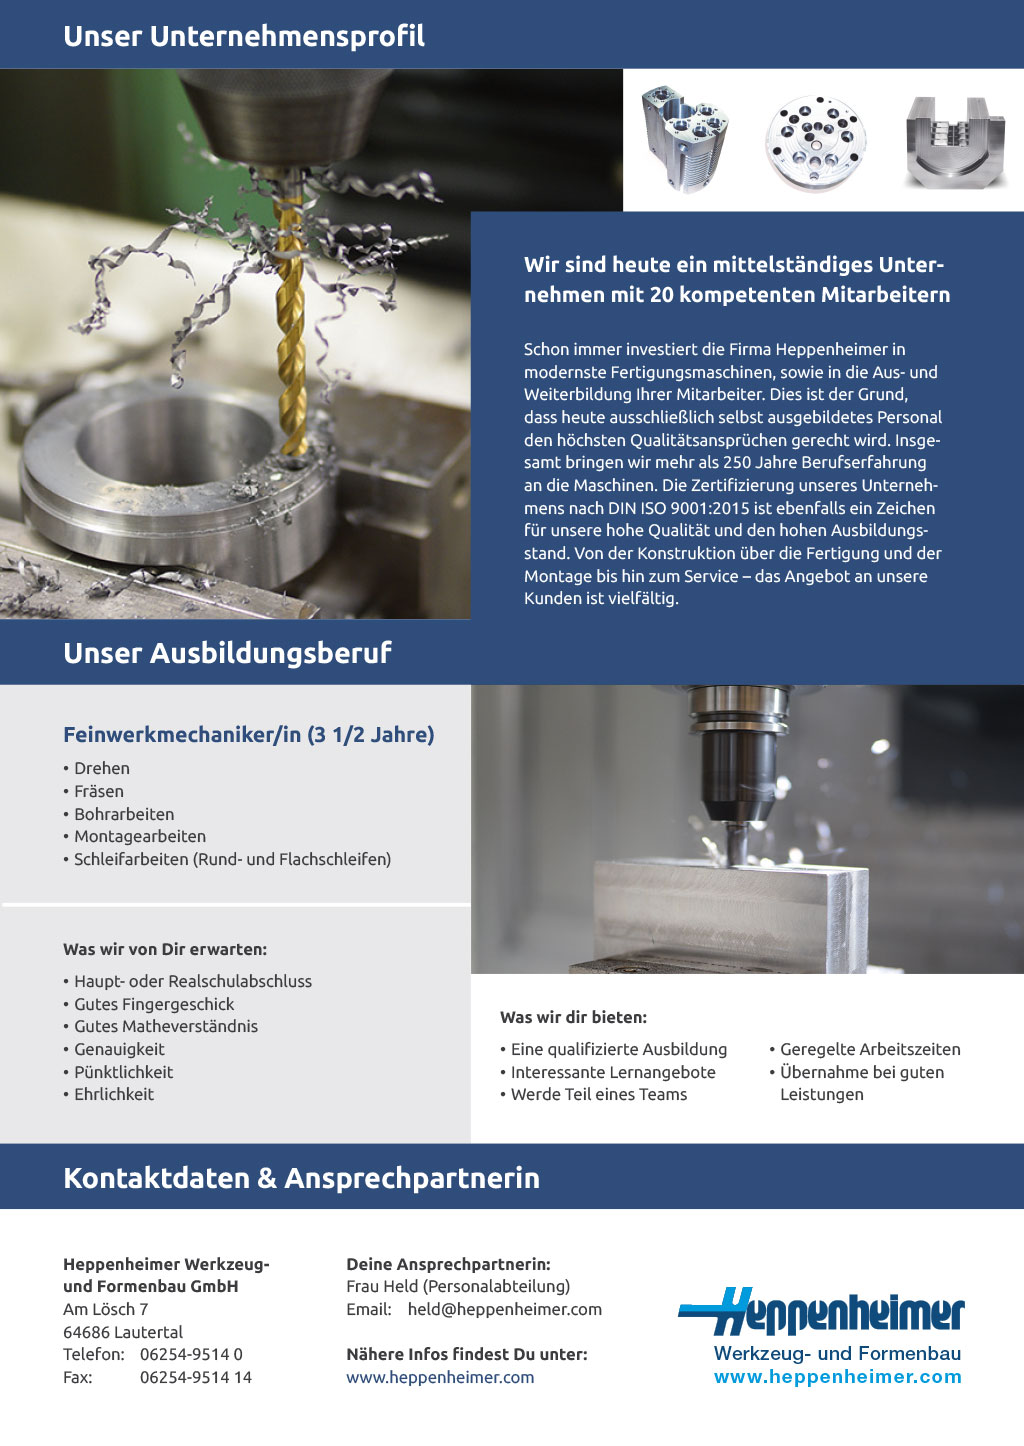 Ausbildungsplakat: Heppenheimer Werkzeug- und Formenbau GmbH